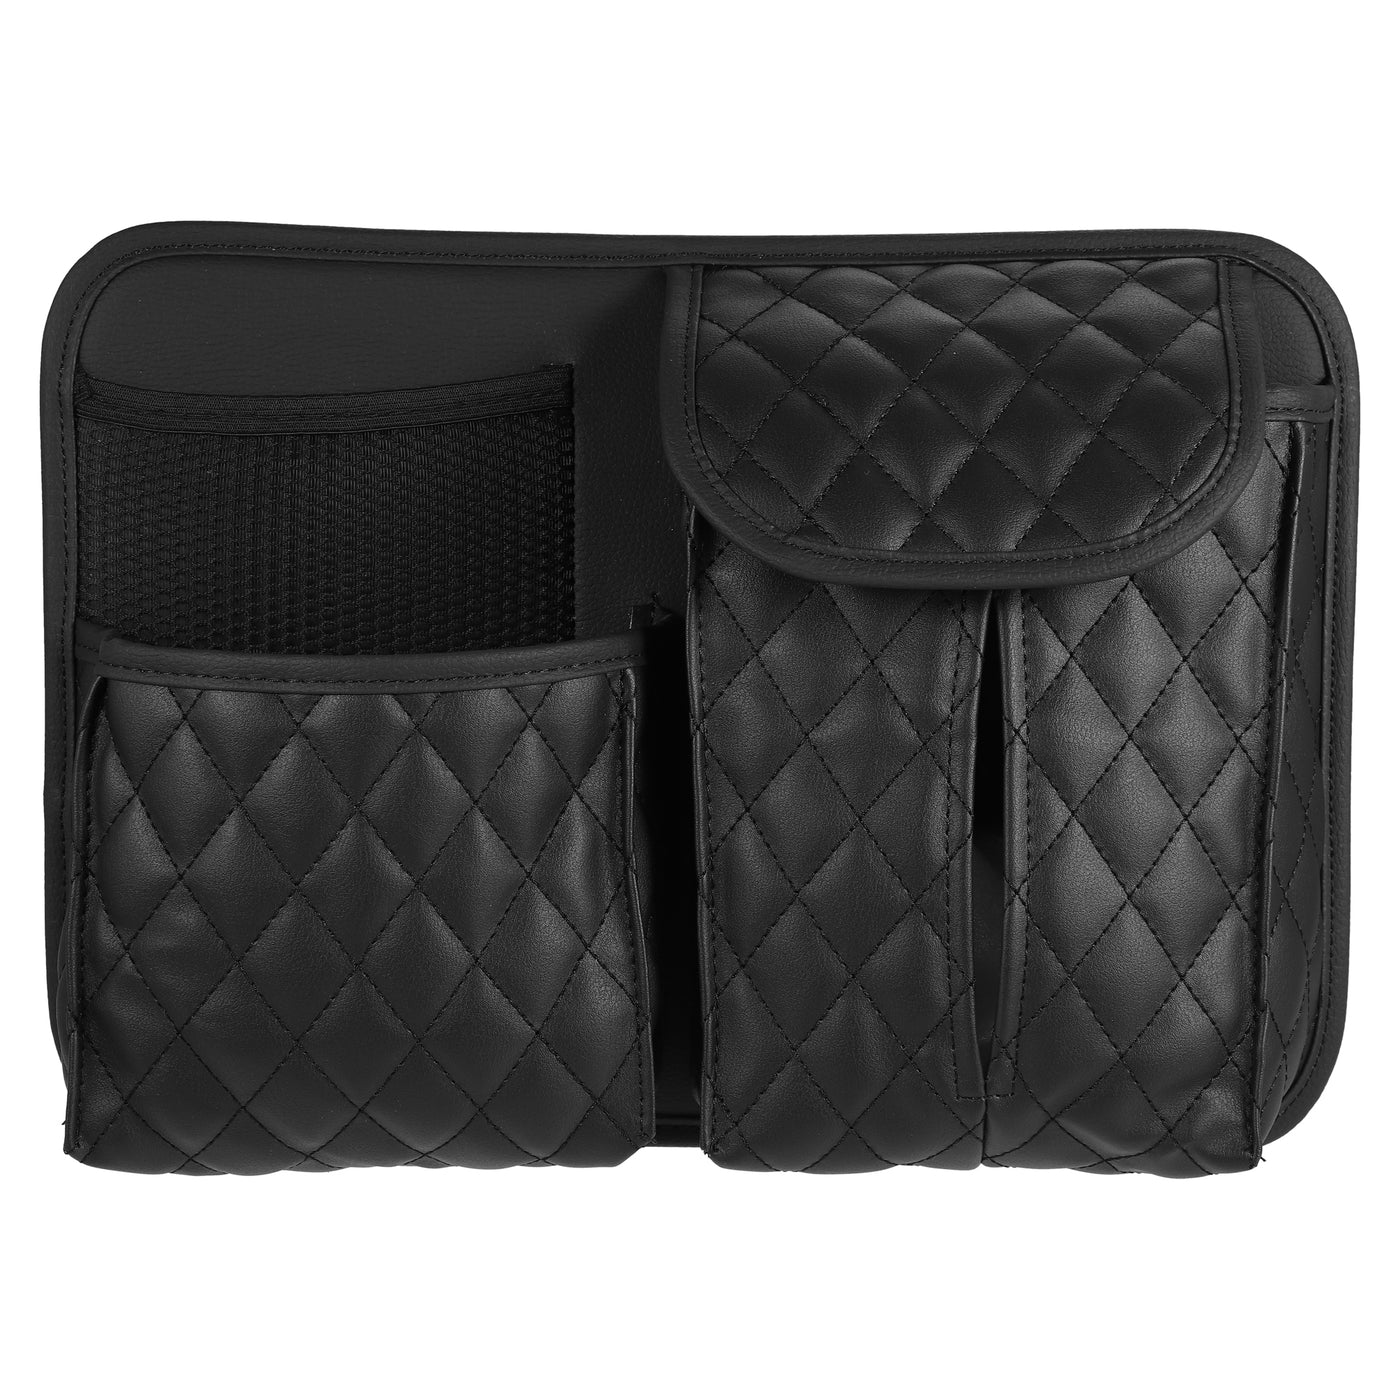 ACROPIX Car Seat Back Universal Car Back Seat Storage Bag Organizer Black - Pack of 1